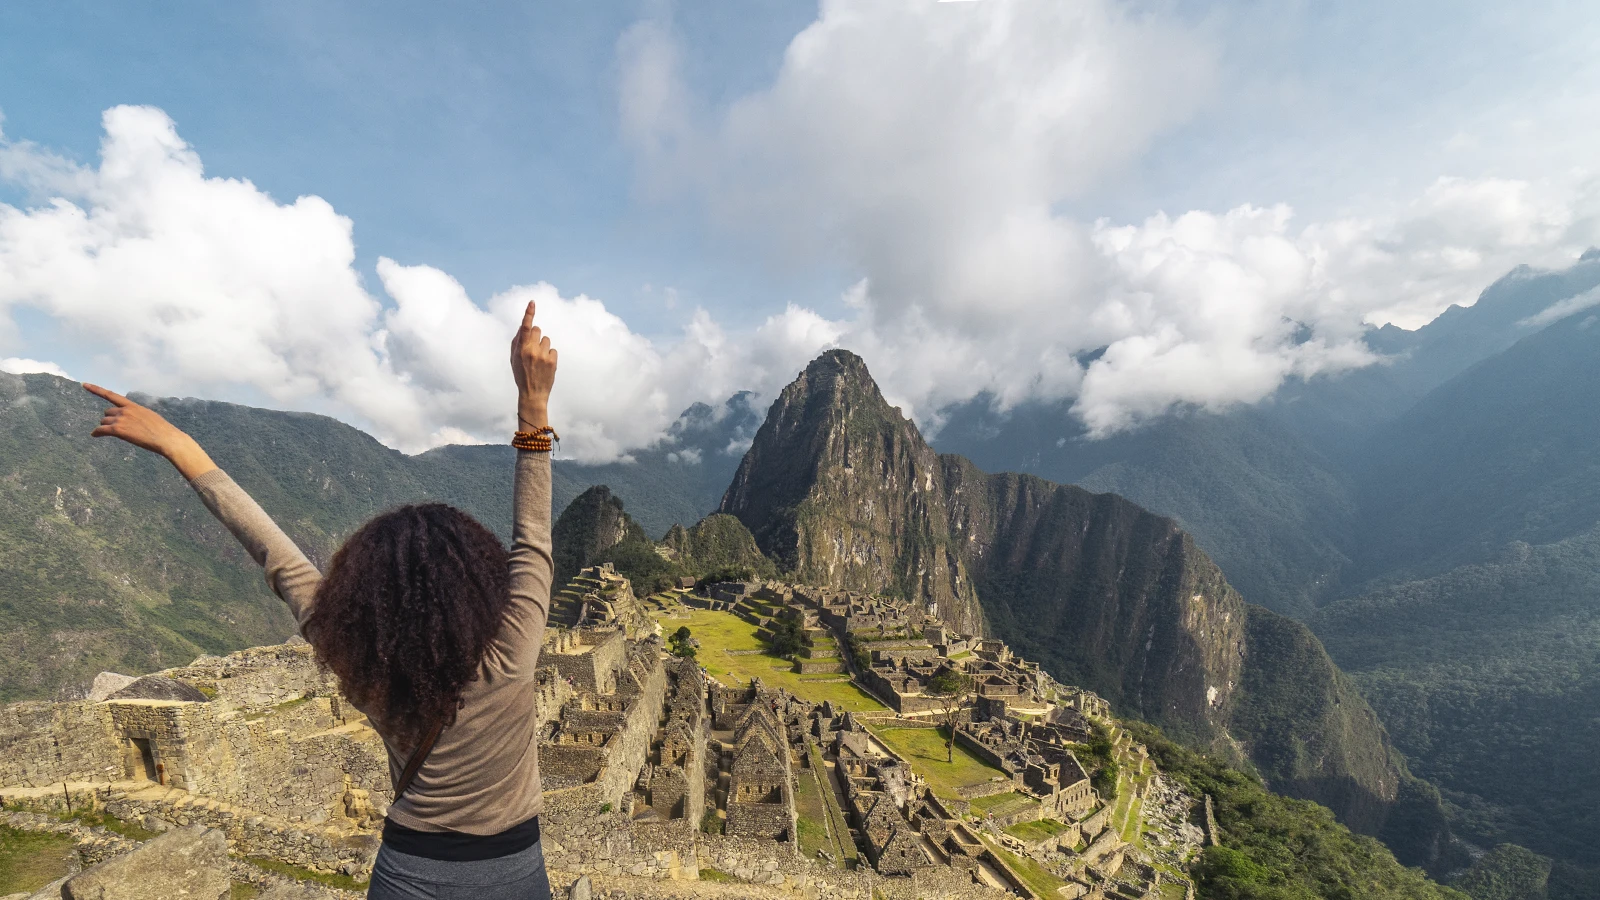 World Wonder, Machu Picchu. Source: CuscoPeru.com